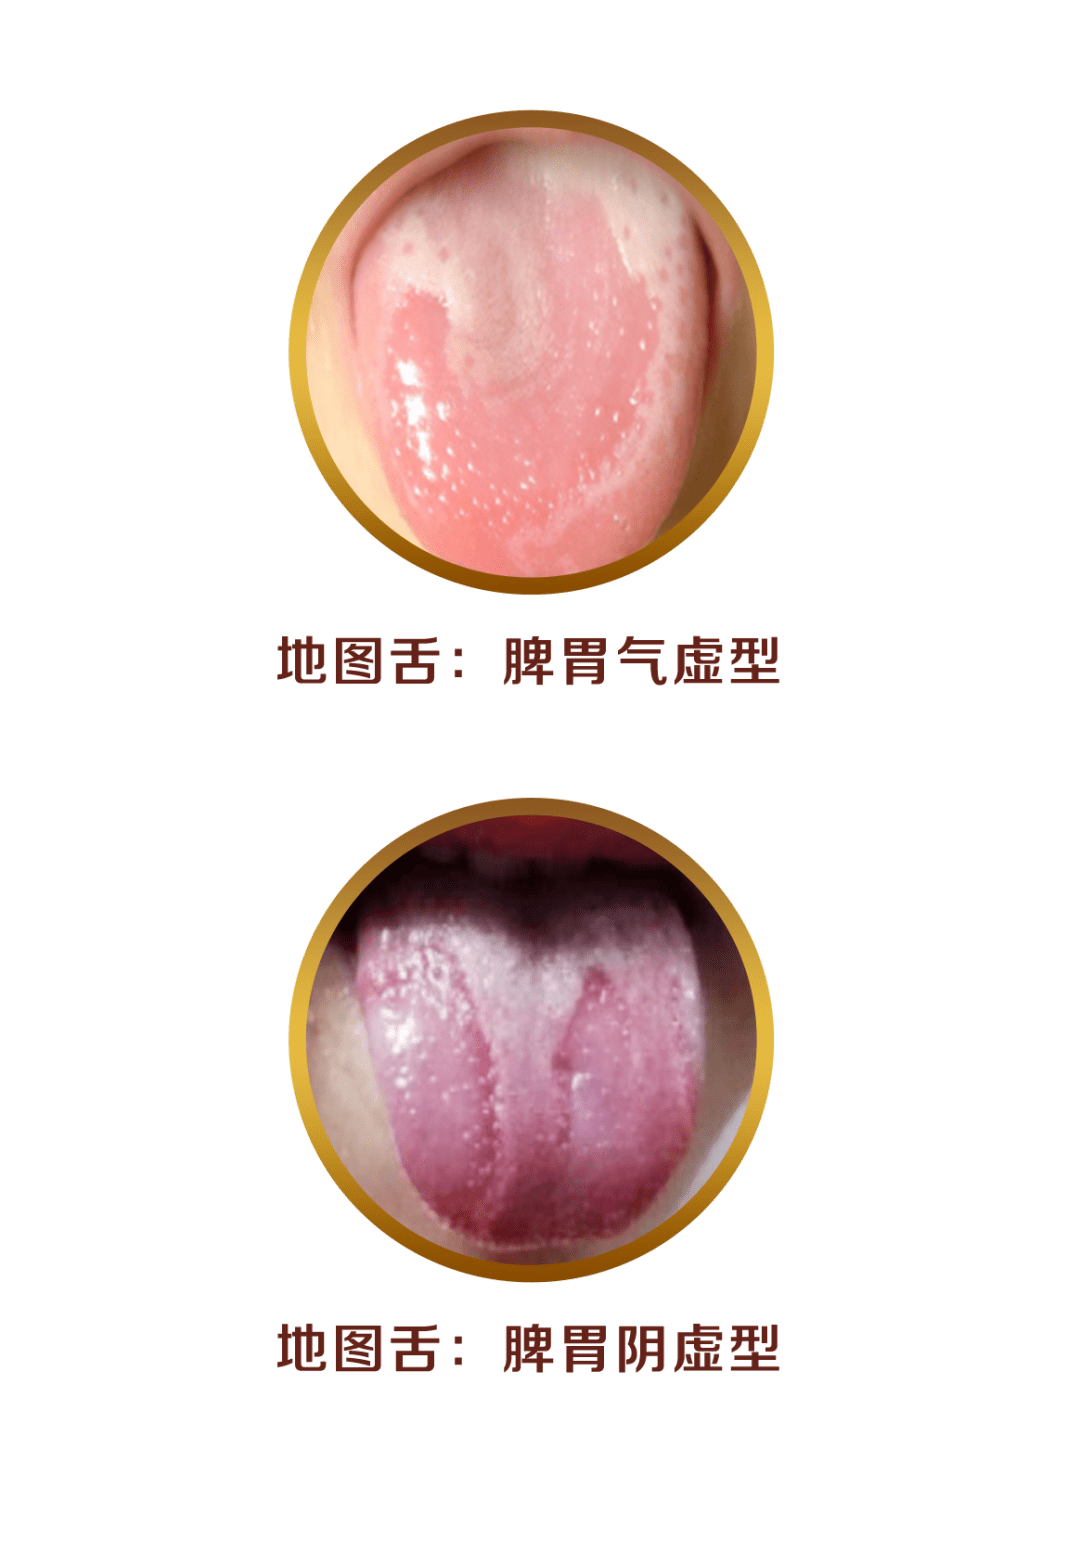 如果宝宝的舌苔部分掉落,剥落处光滑无苔,就是地图舌(花剥苔).